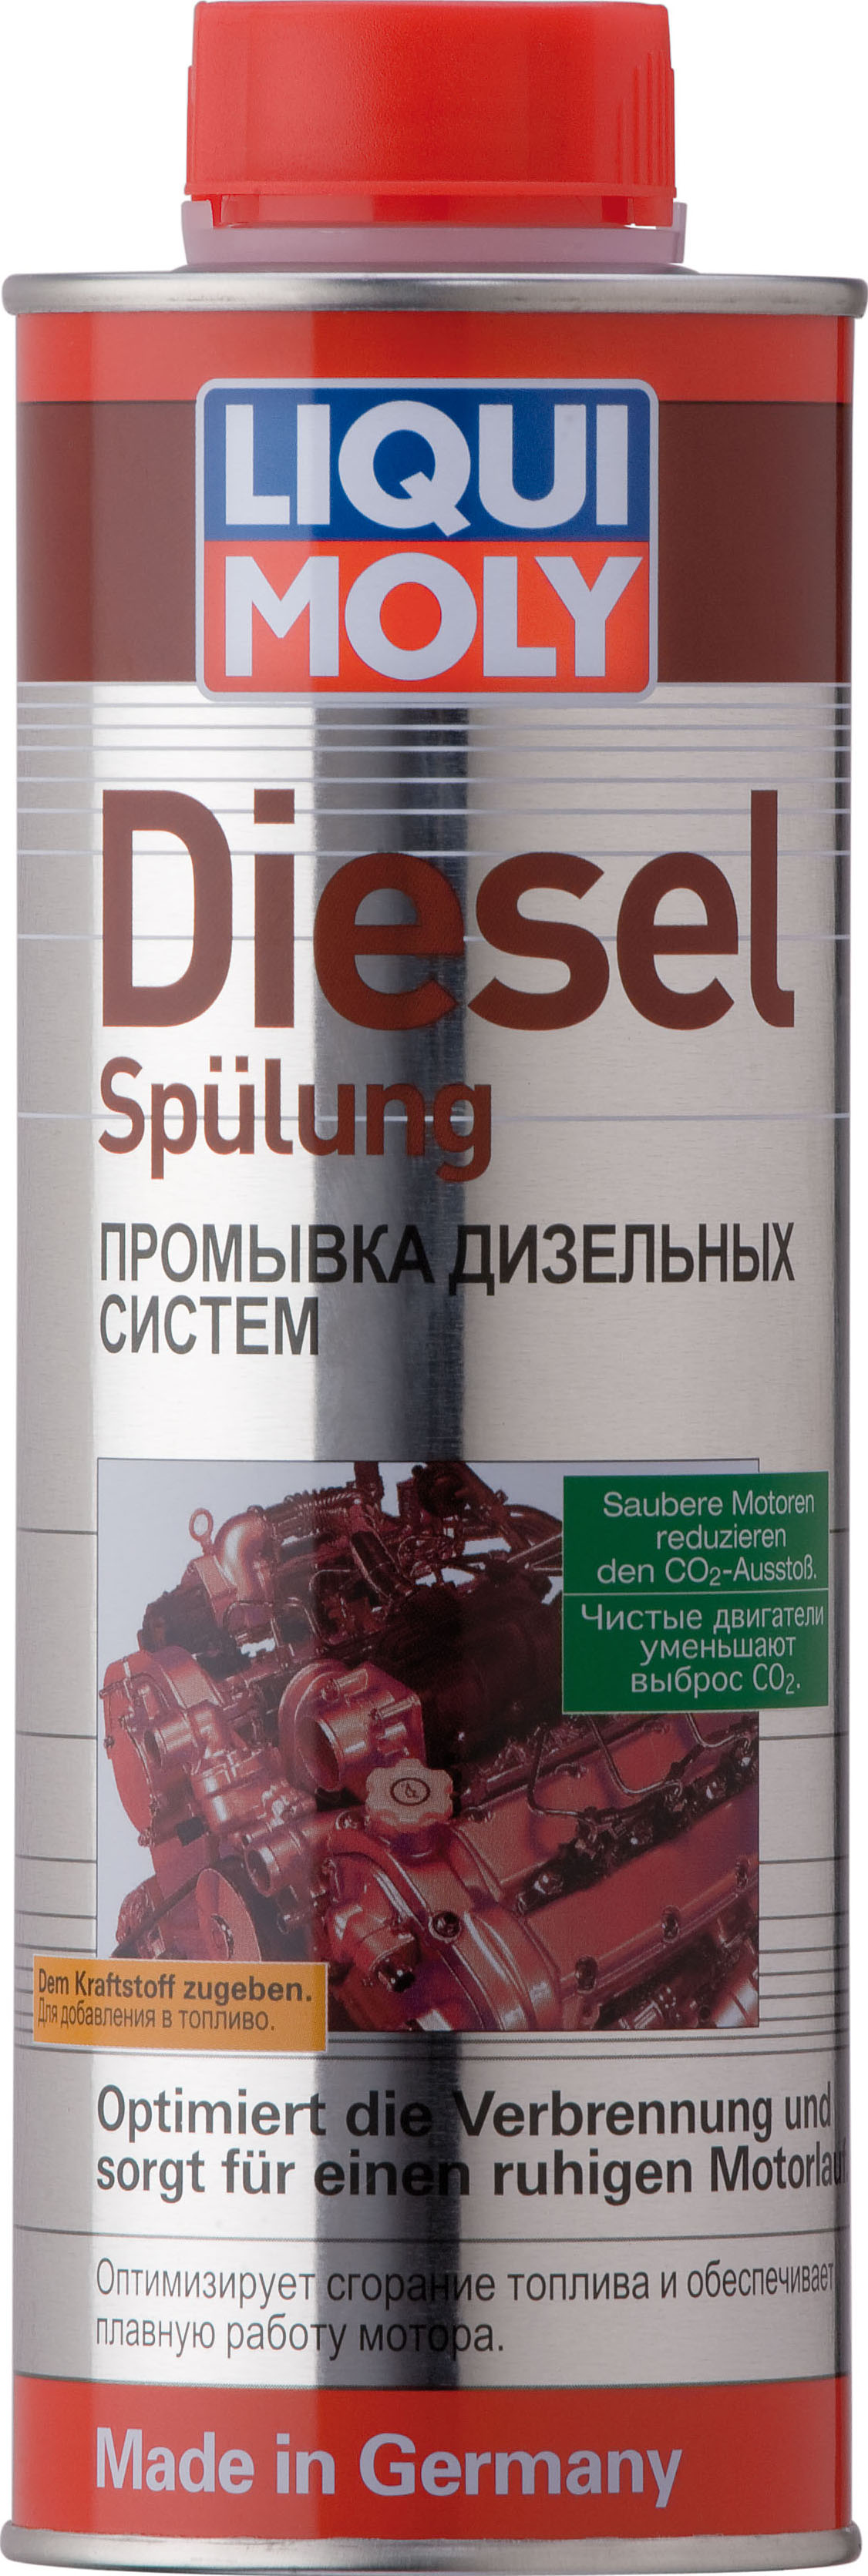 , замена 2509 Промывка дизельных систем Diesel Spulung, 0,5л - Liqui Moly 1912